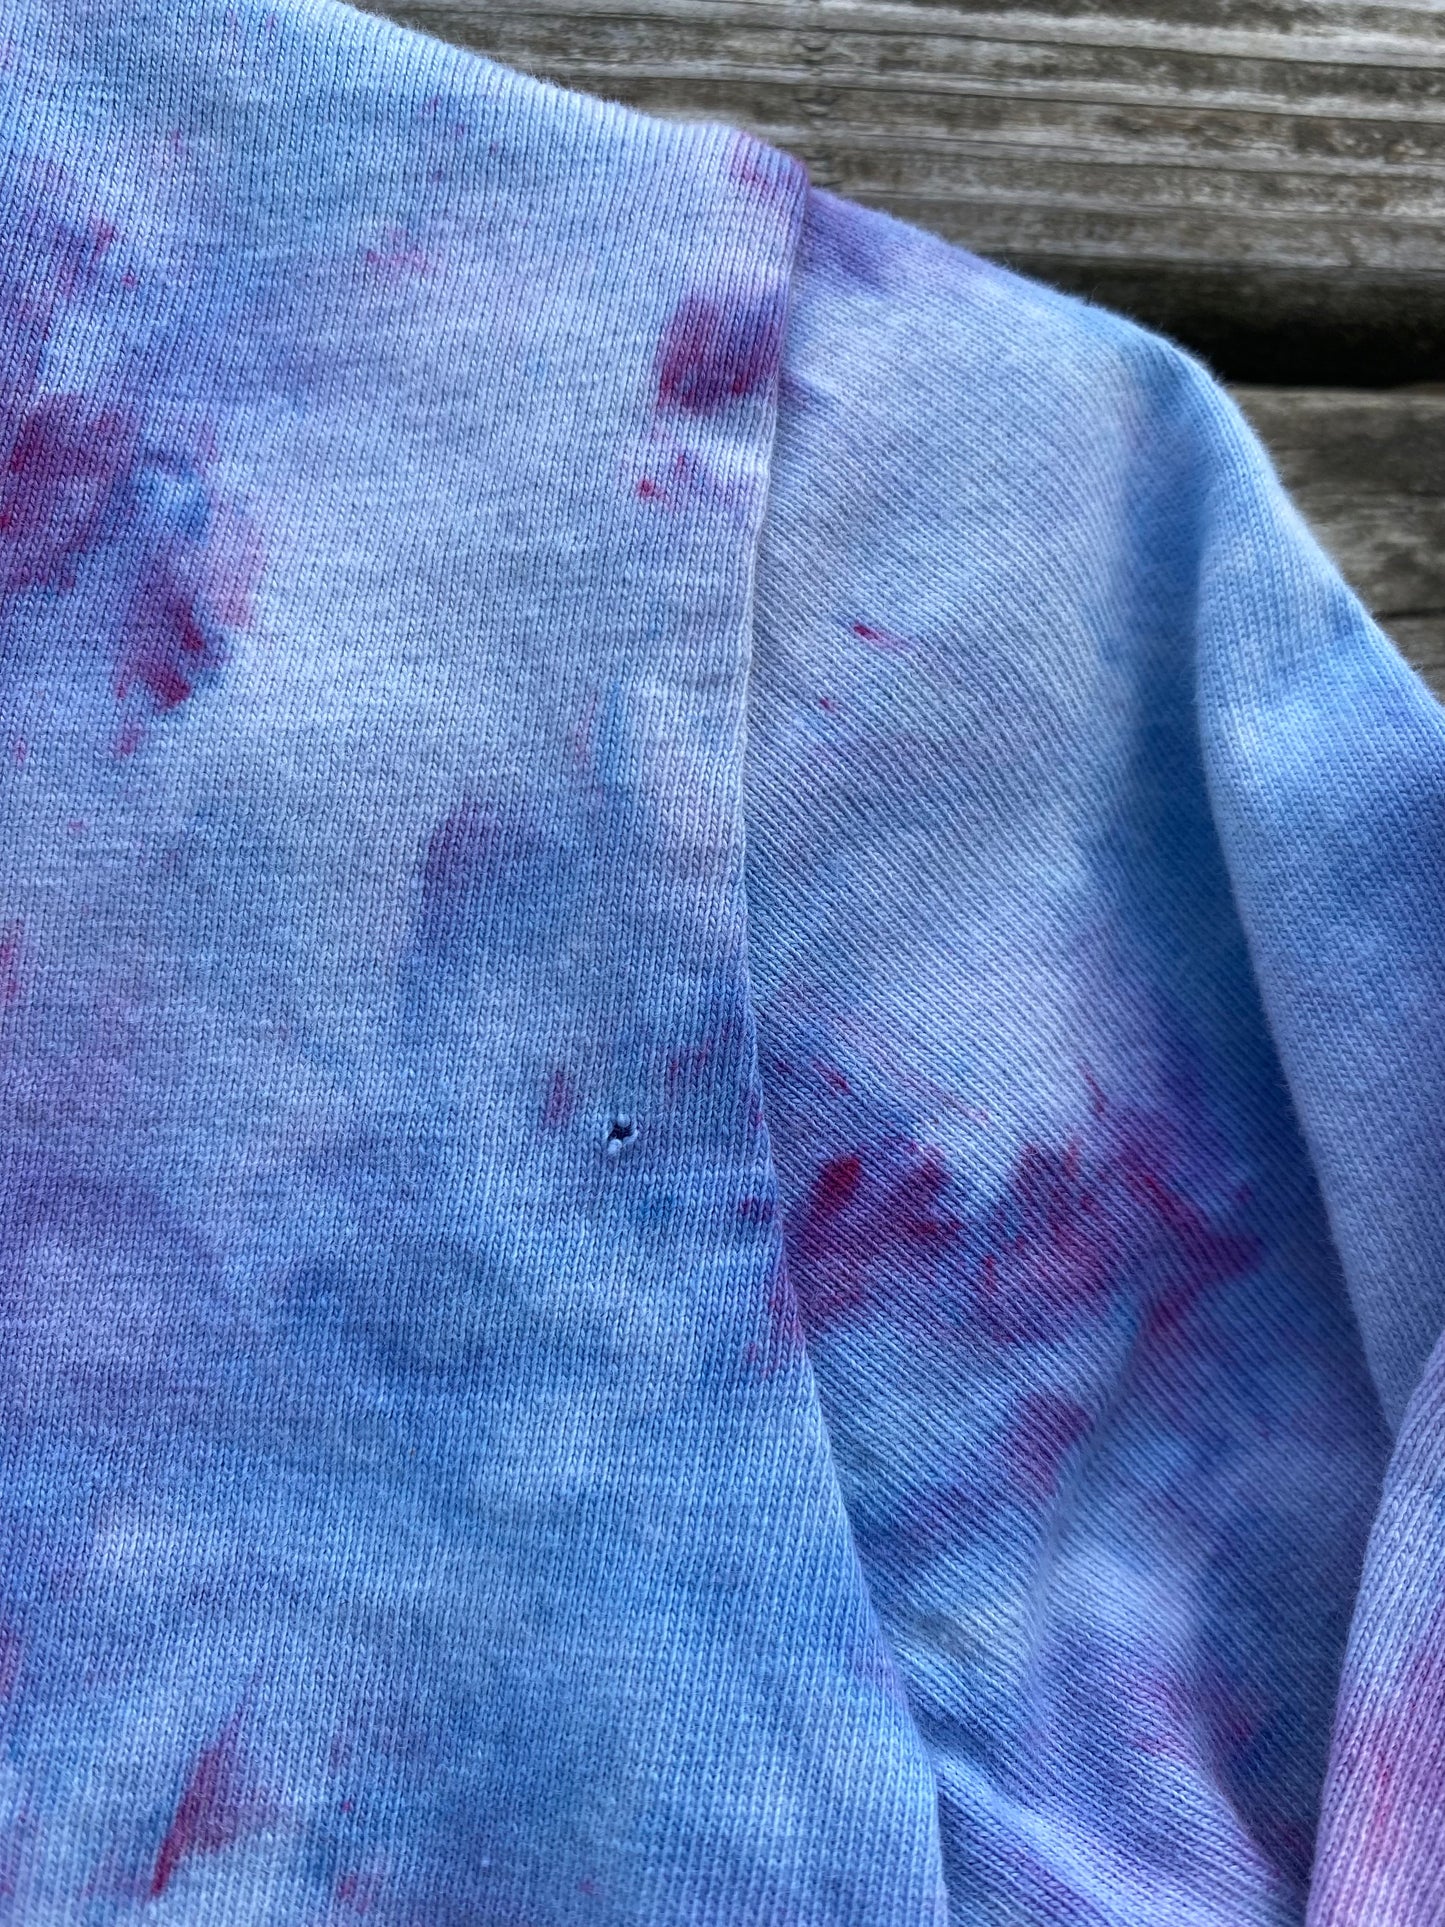 Size 3 cotton on unicorn long sleeve shirt